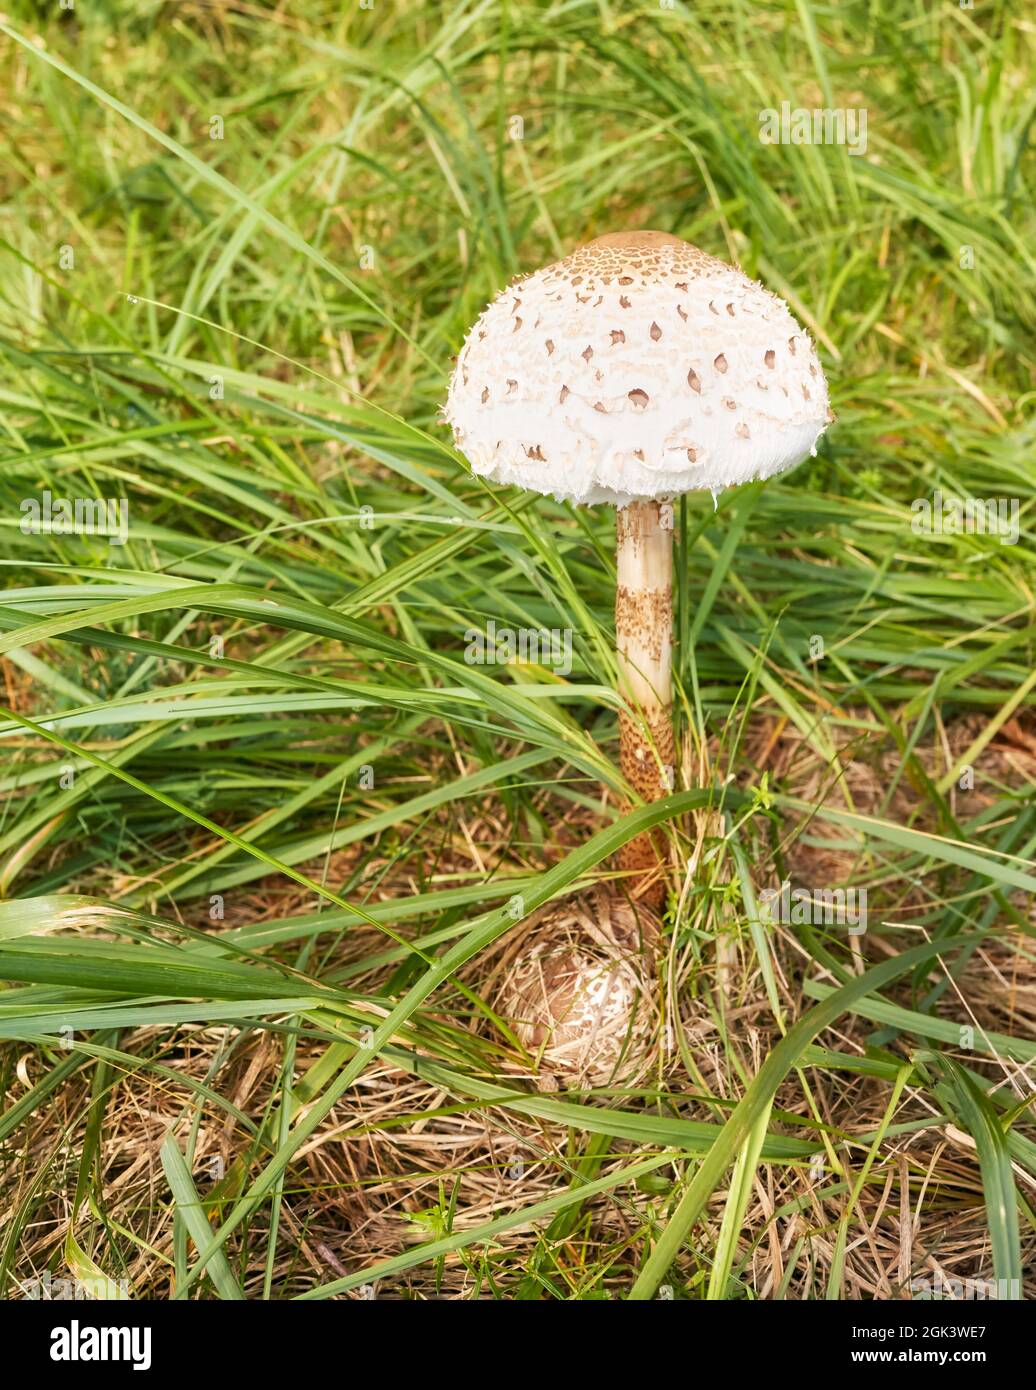 Primo piano immagine del fungo Parasol (Macrolepiota procera) in erba, fuoco selettivo. Foto Stock